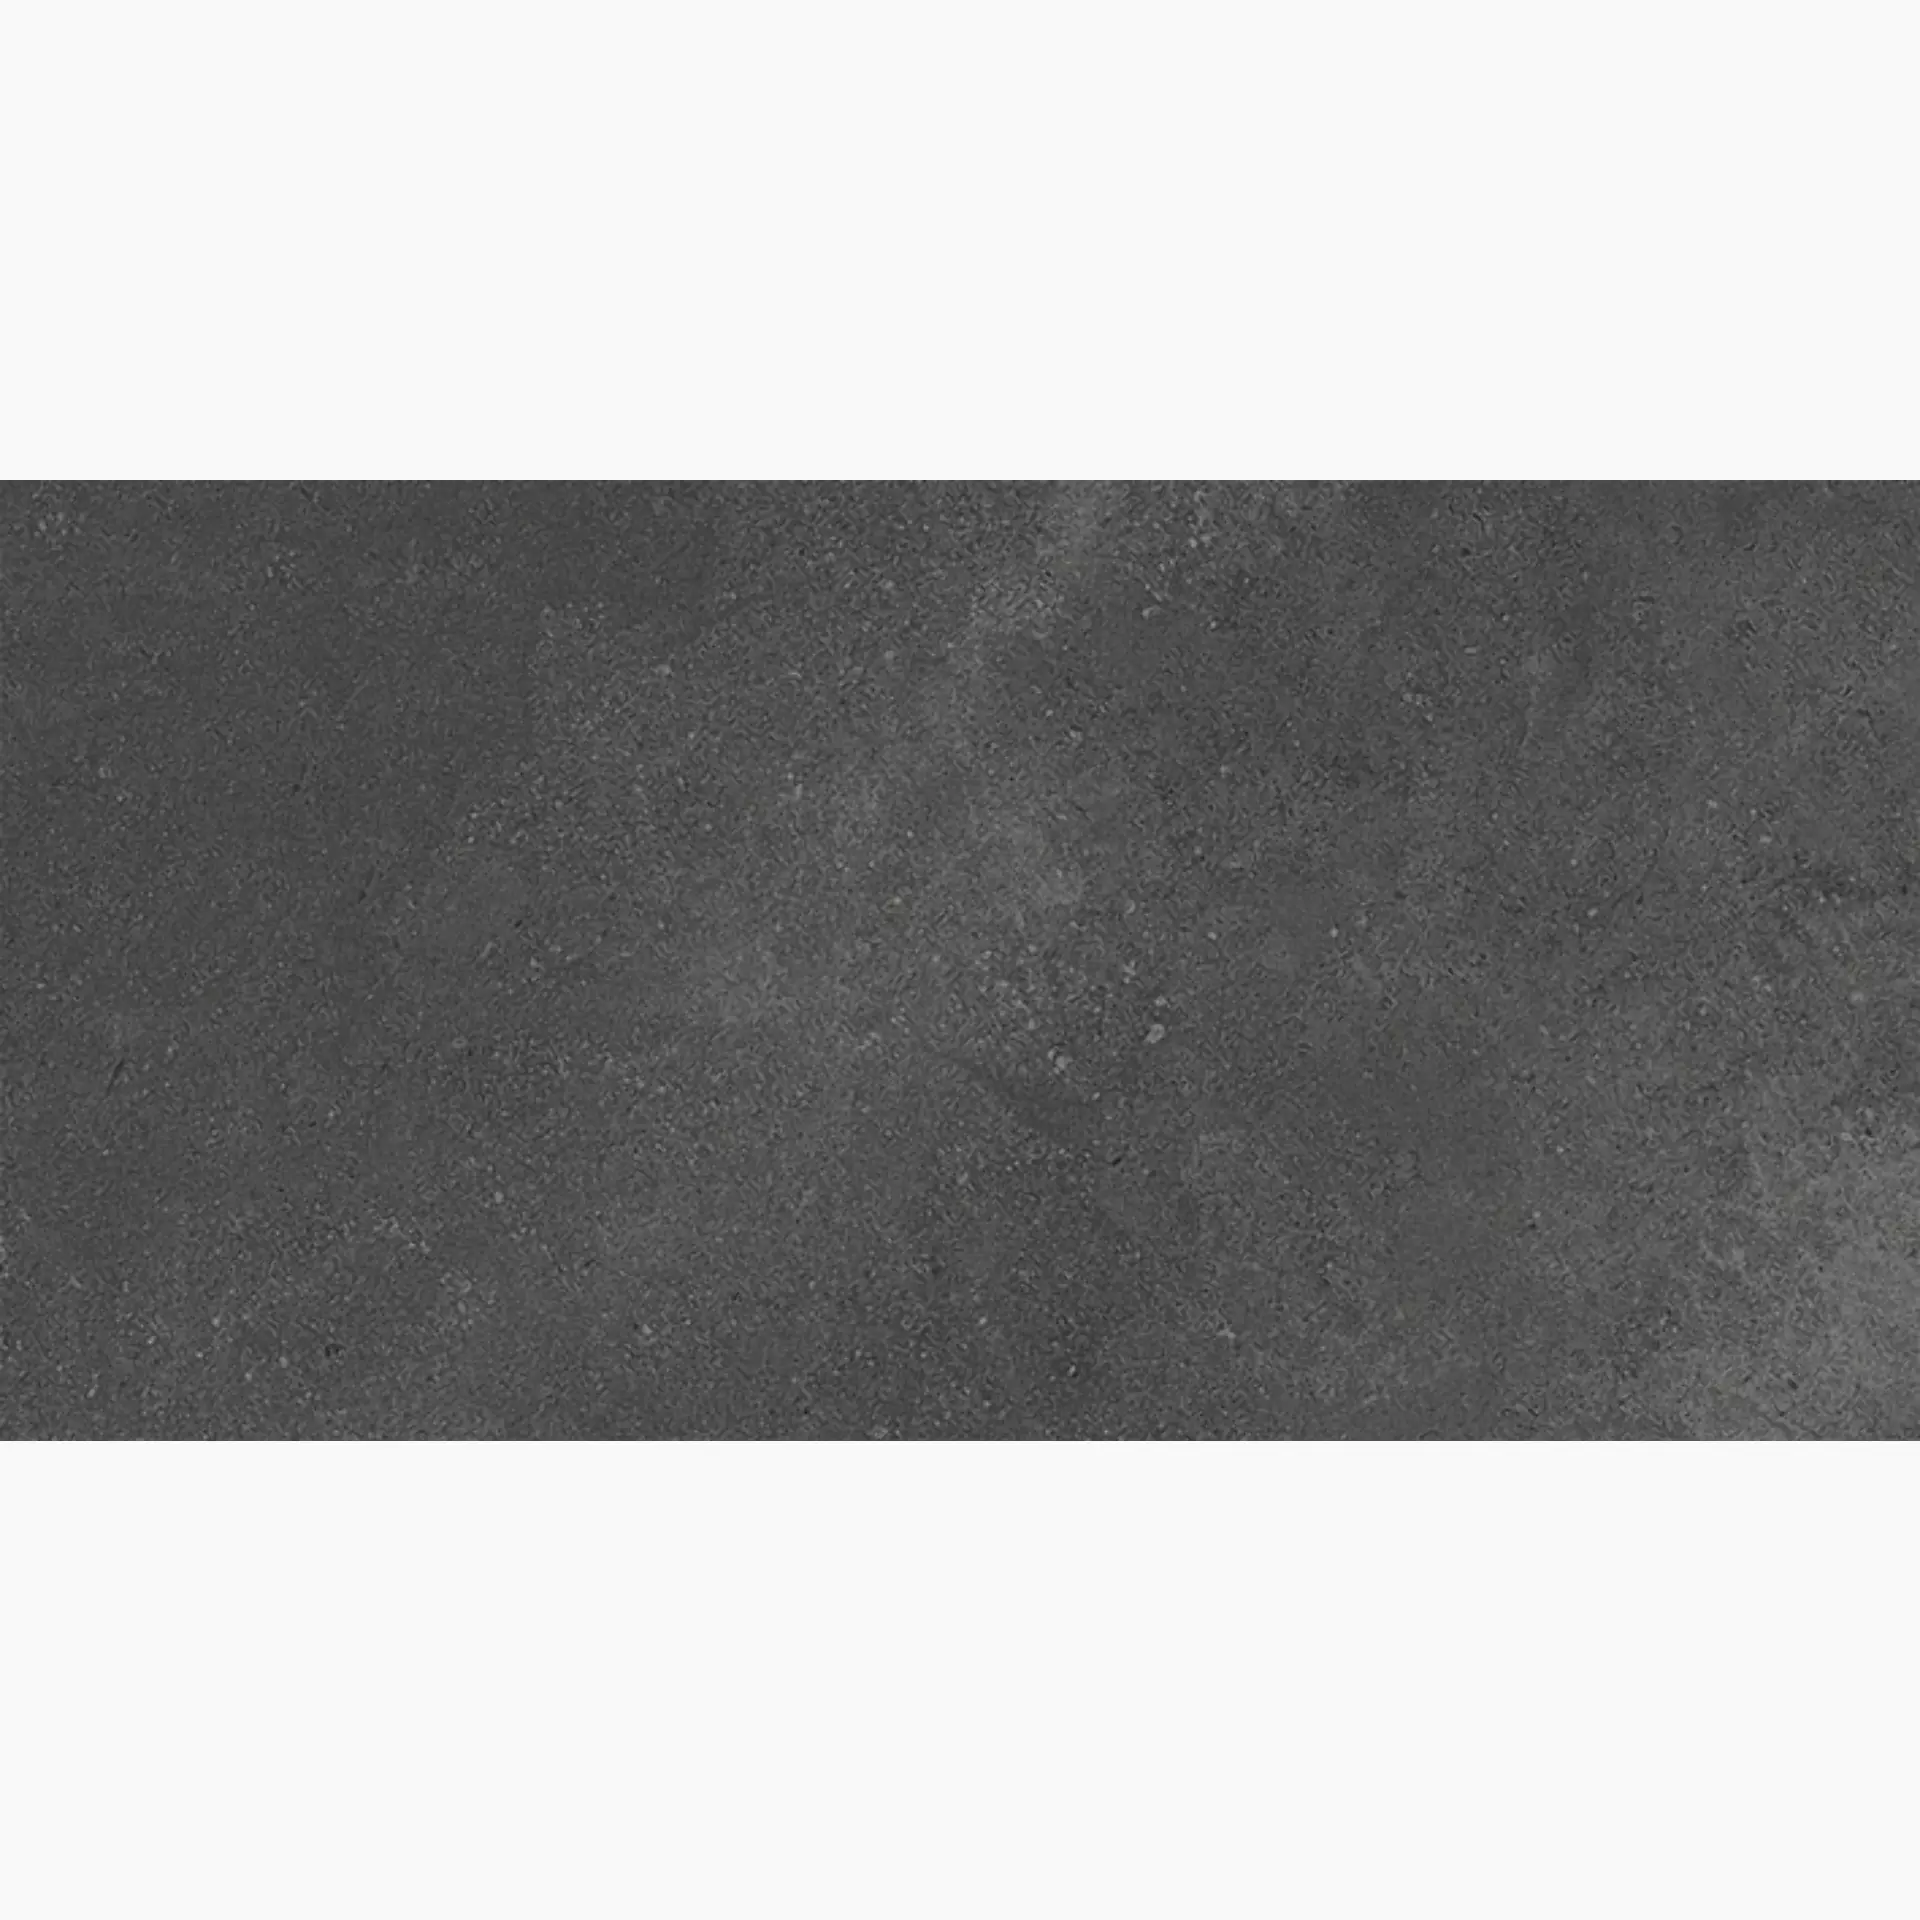 Wandfliese,Bodenfliese Villeroy & Boch Hudson Magma Rough – Polished Magma 2576-SD8L geschliffen 30x60cm rektifiziert 10mm